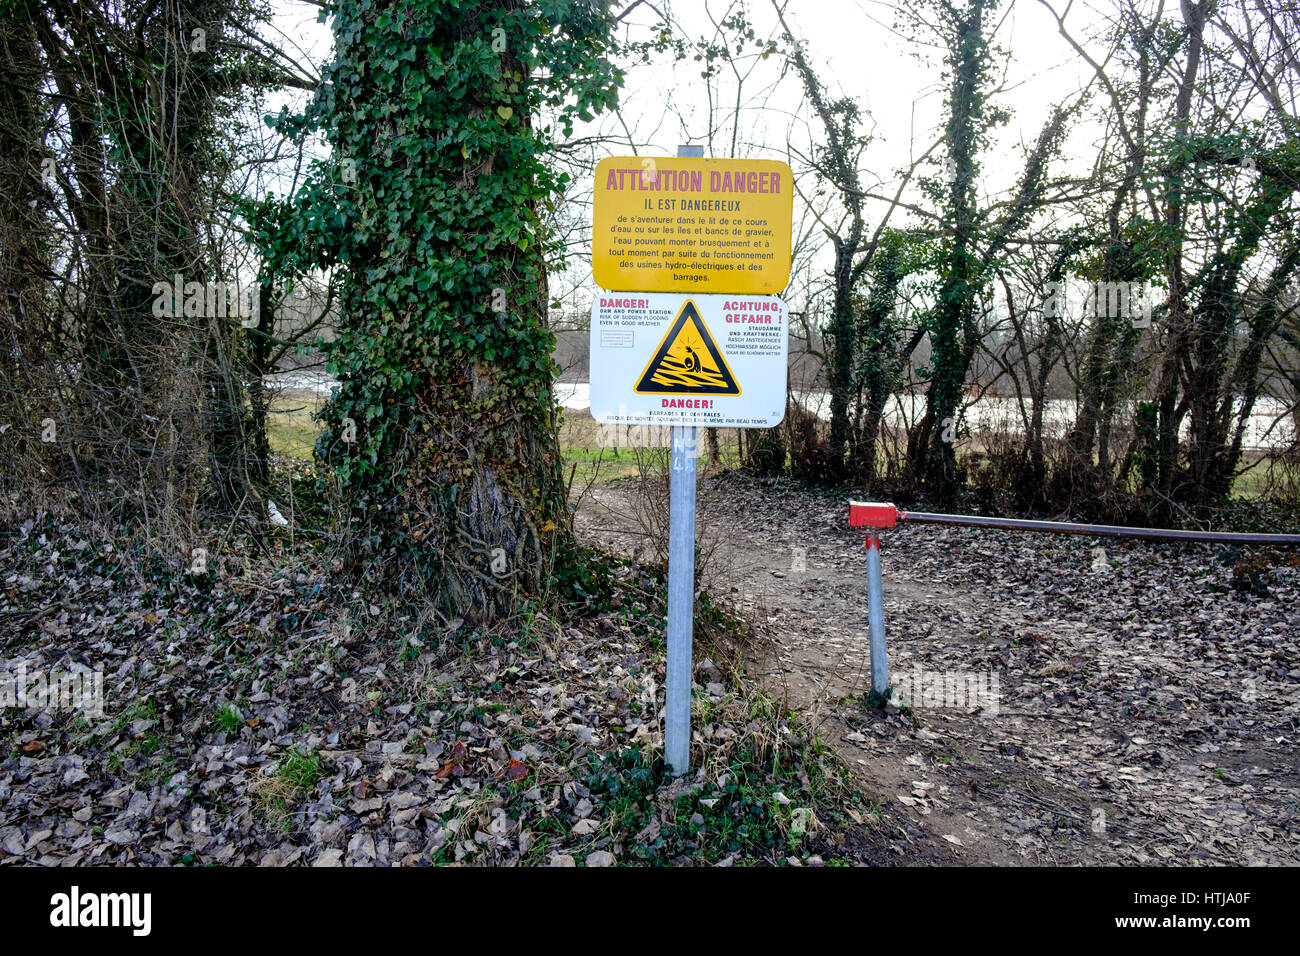 Attenzione pericolo. Il est Dangereux" (attenzione, è pericoloso) segnale di avvertimento circa le inondazioni sulle rive del fiume Loira vicino a Saint Etienne, Francia Foto Stock